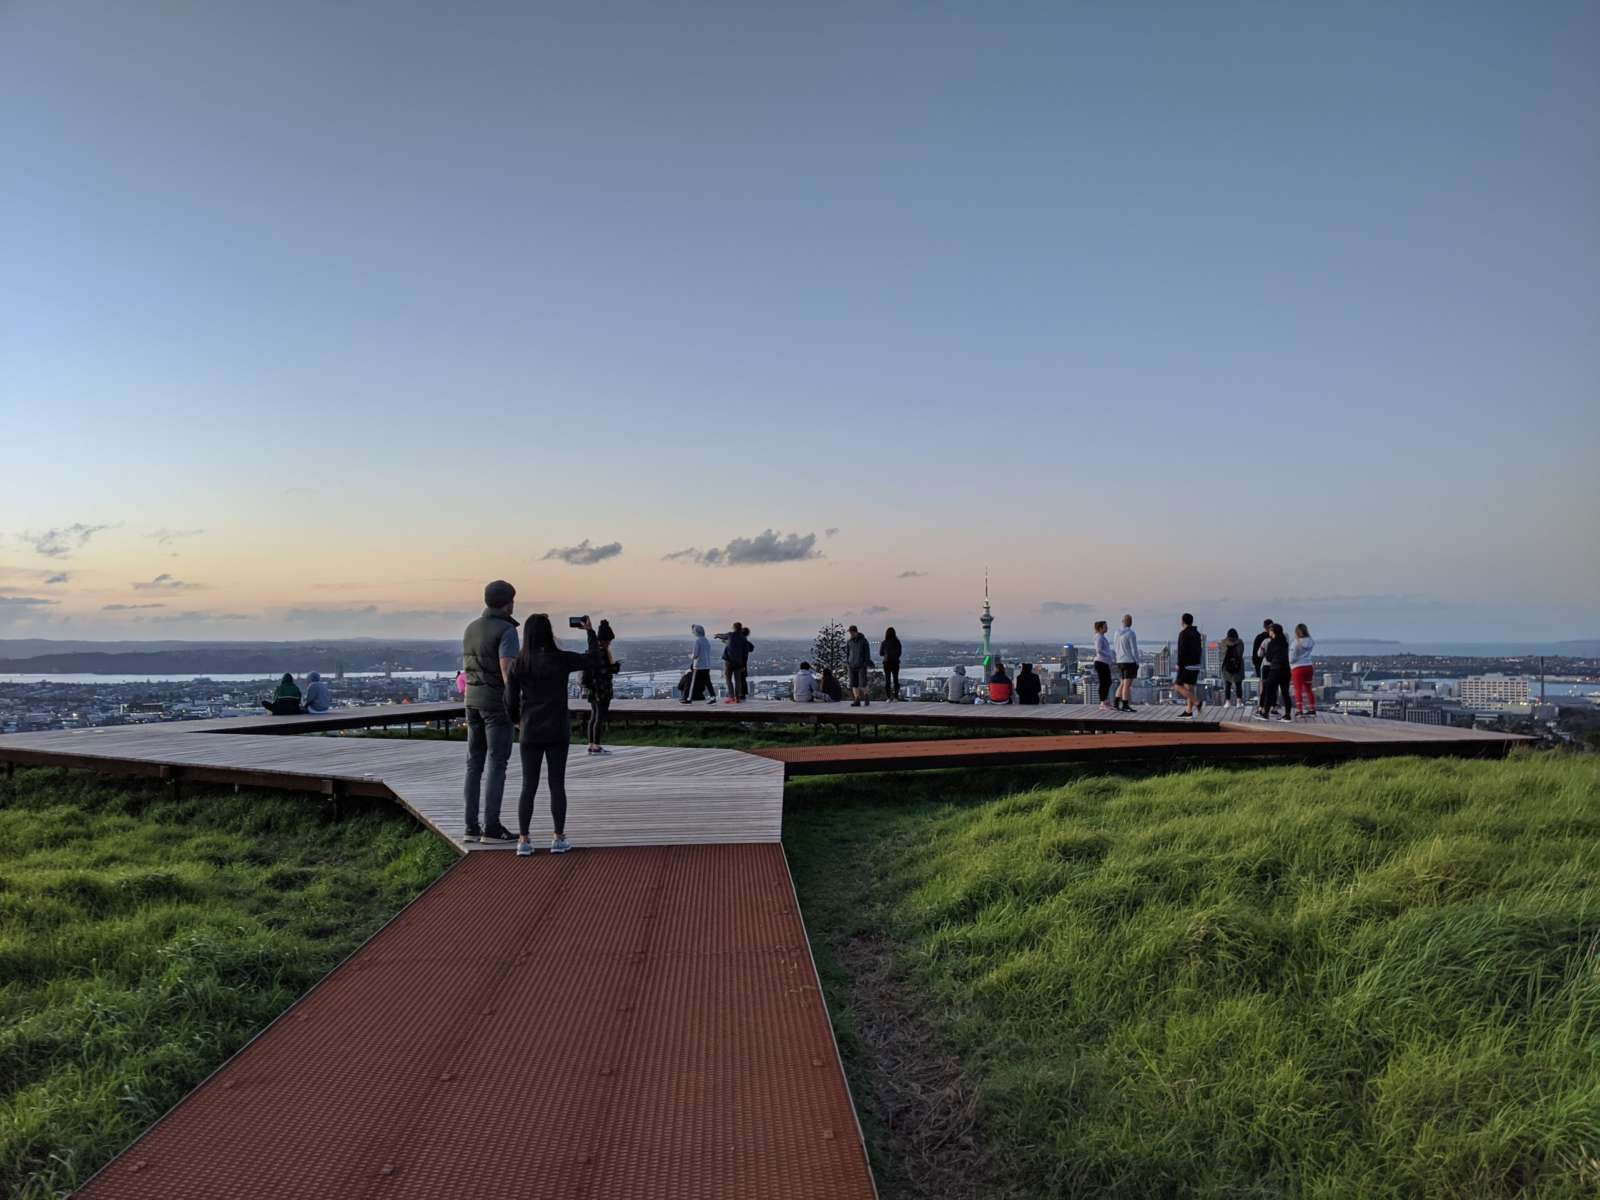 Maungawhau / Mt Eden boardwalk. Credit: Isthmus